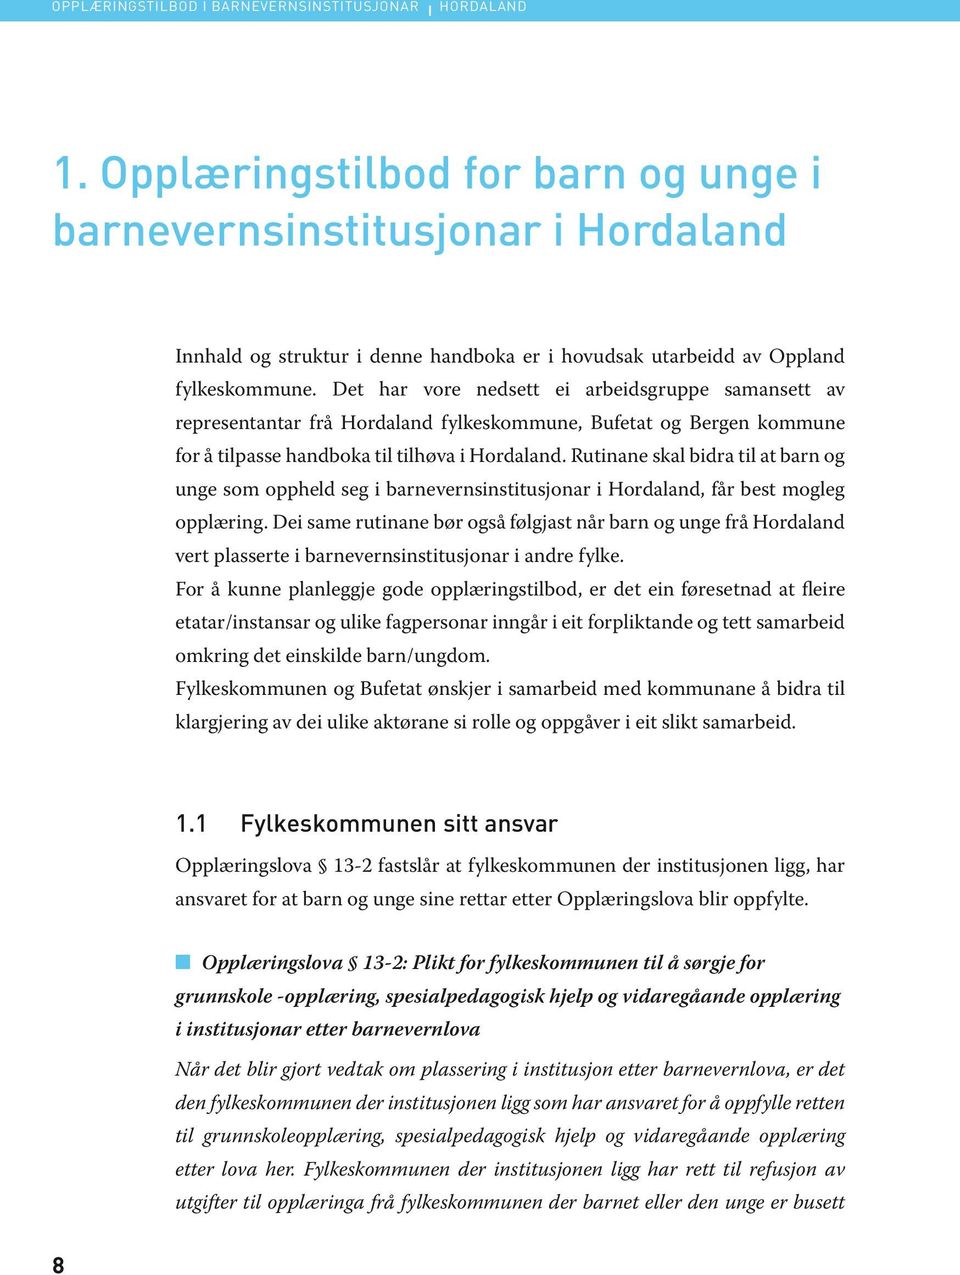 Det har vore nedsett ei arbeidsgruppe samansett av representantar frå Hordaland fylkeskommune, Bufetat og Bergen kommune for å tilpasse handboka til tilhøva i Hordaland.